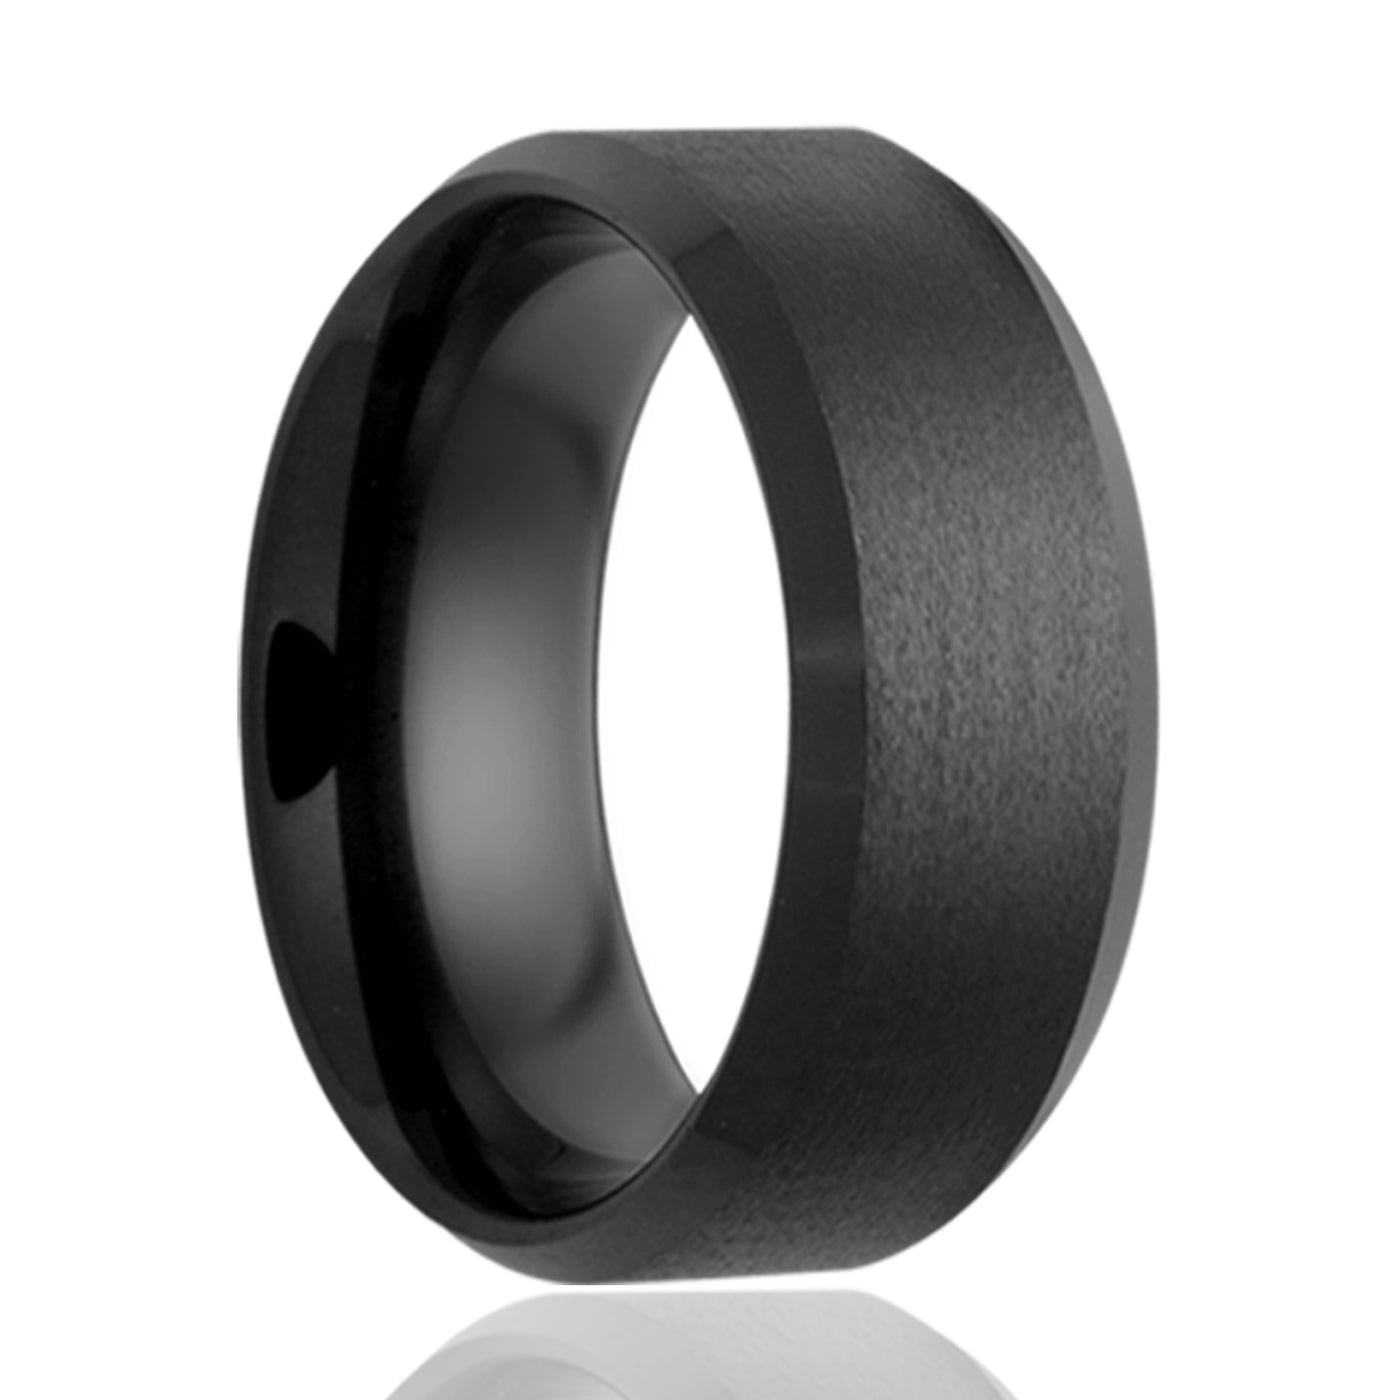 8mm Black Ceramic Bevel Satin Center ring